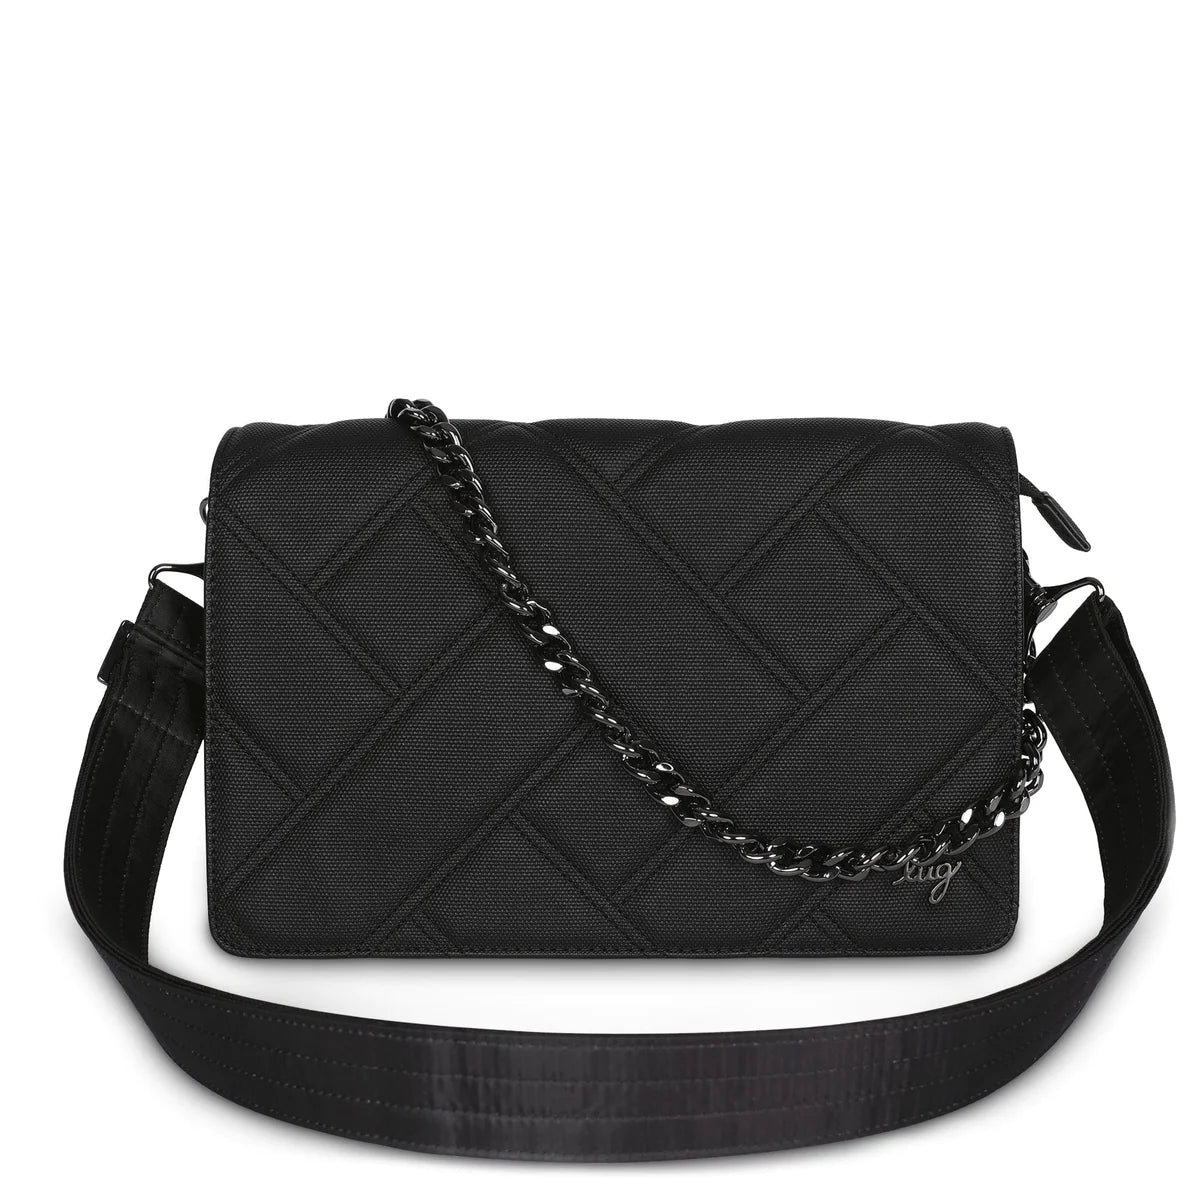 LUG Huddle Matte Luxe VL Shoulder Bag in Black